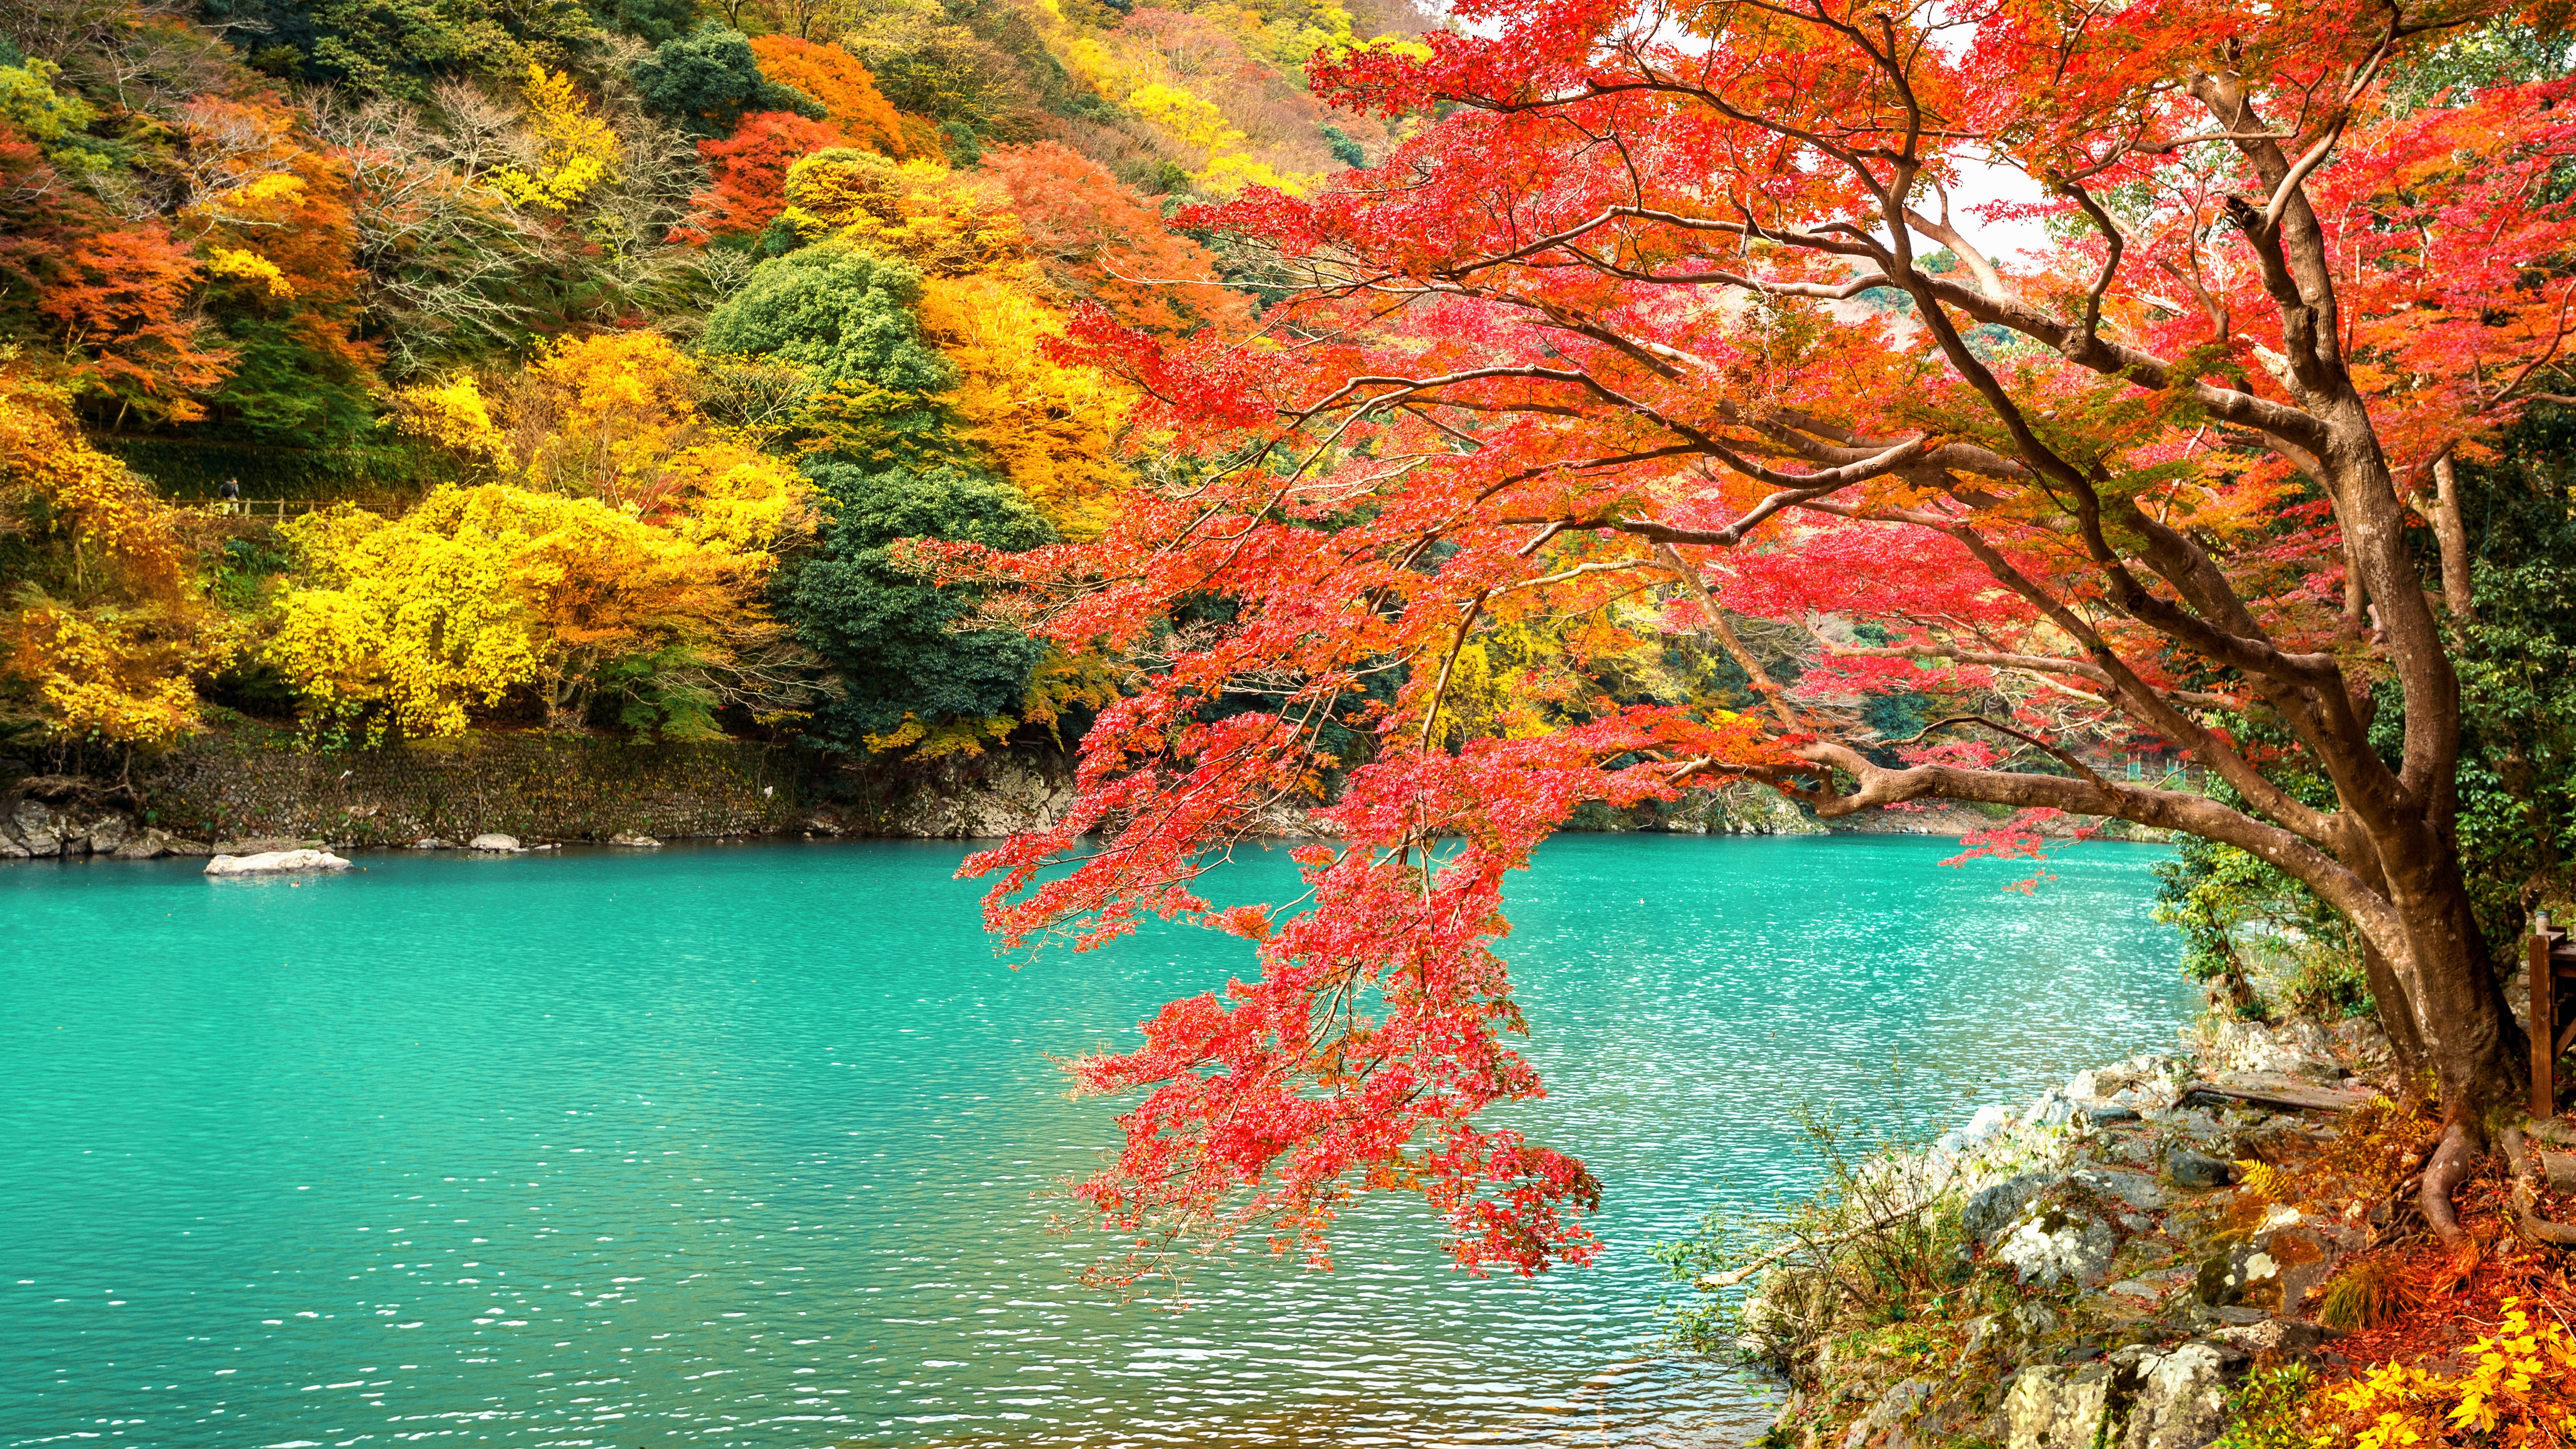 Japan Kyoto Nature Park Lake Arashiyama 4928x2772